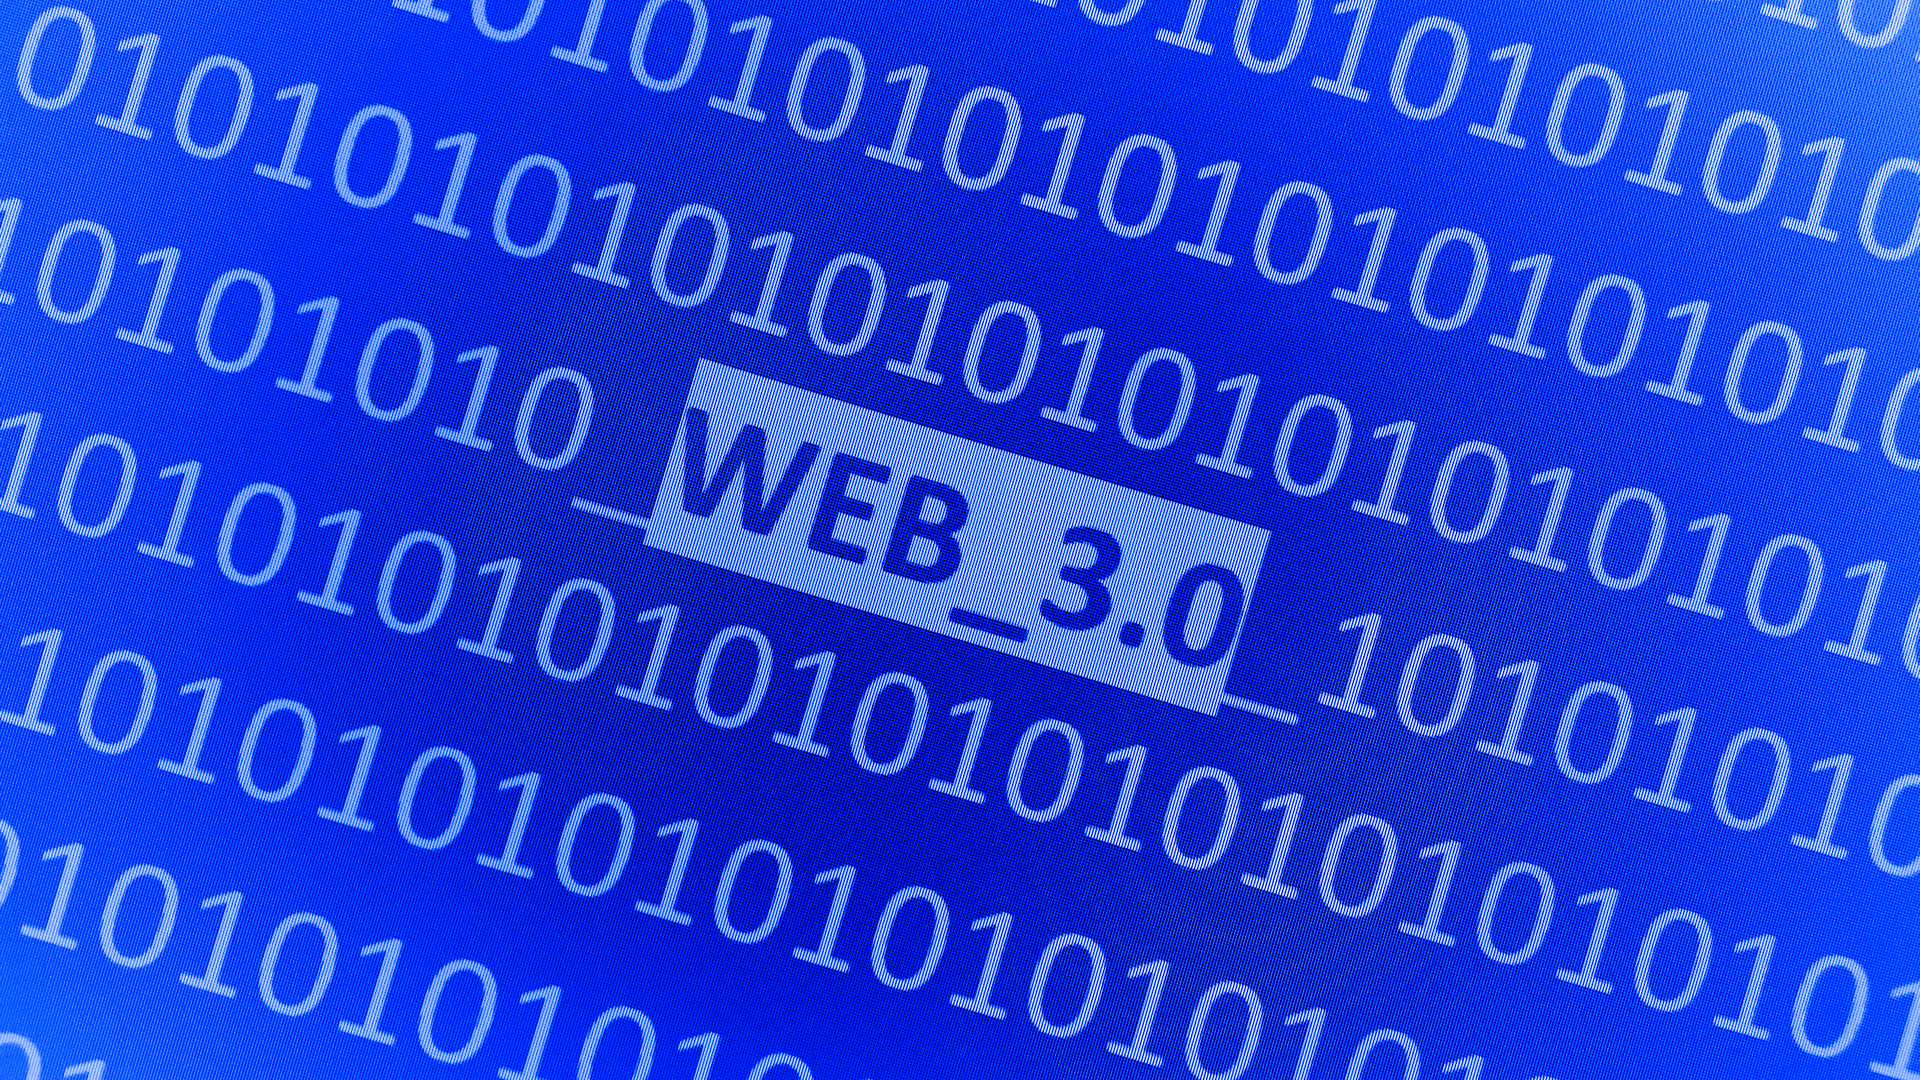 ما الويب 3.0 يعني لجمع البيانات والأمن